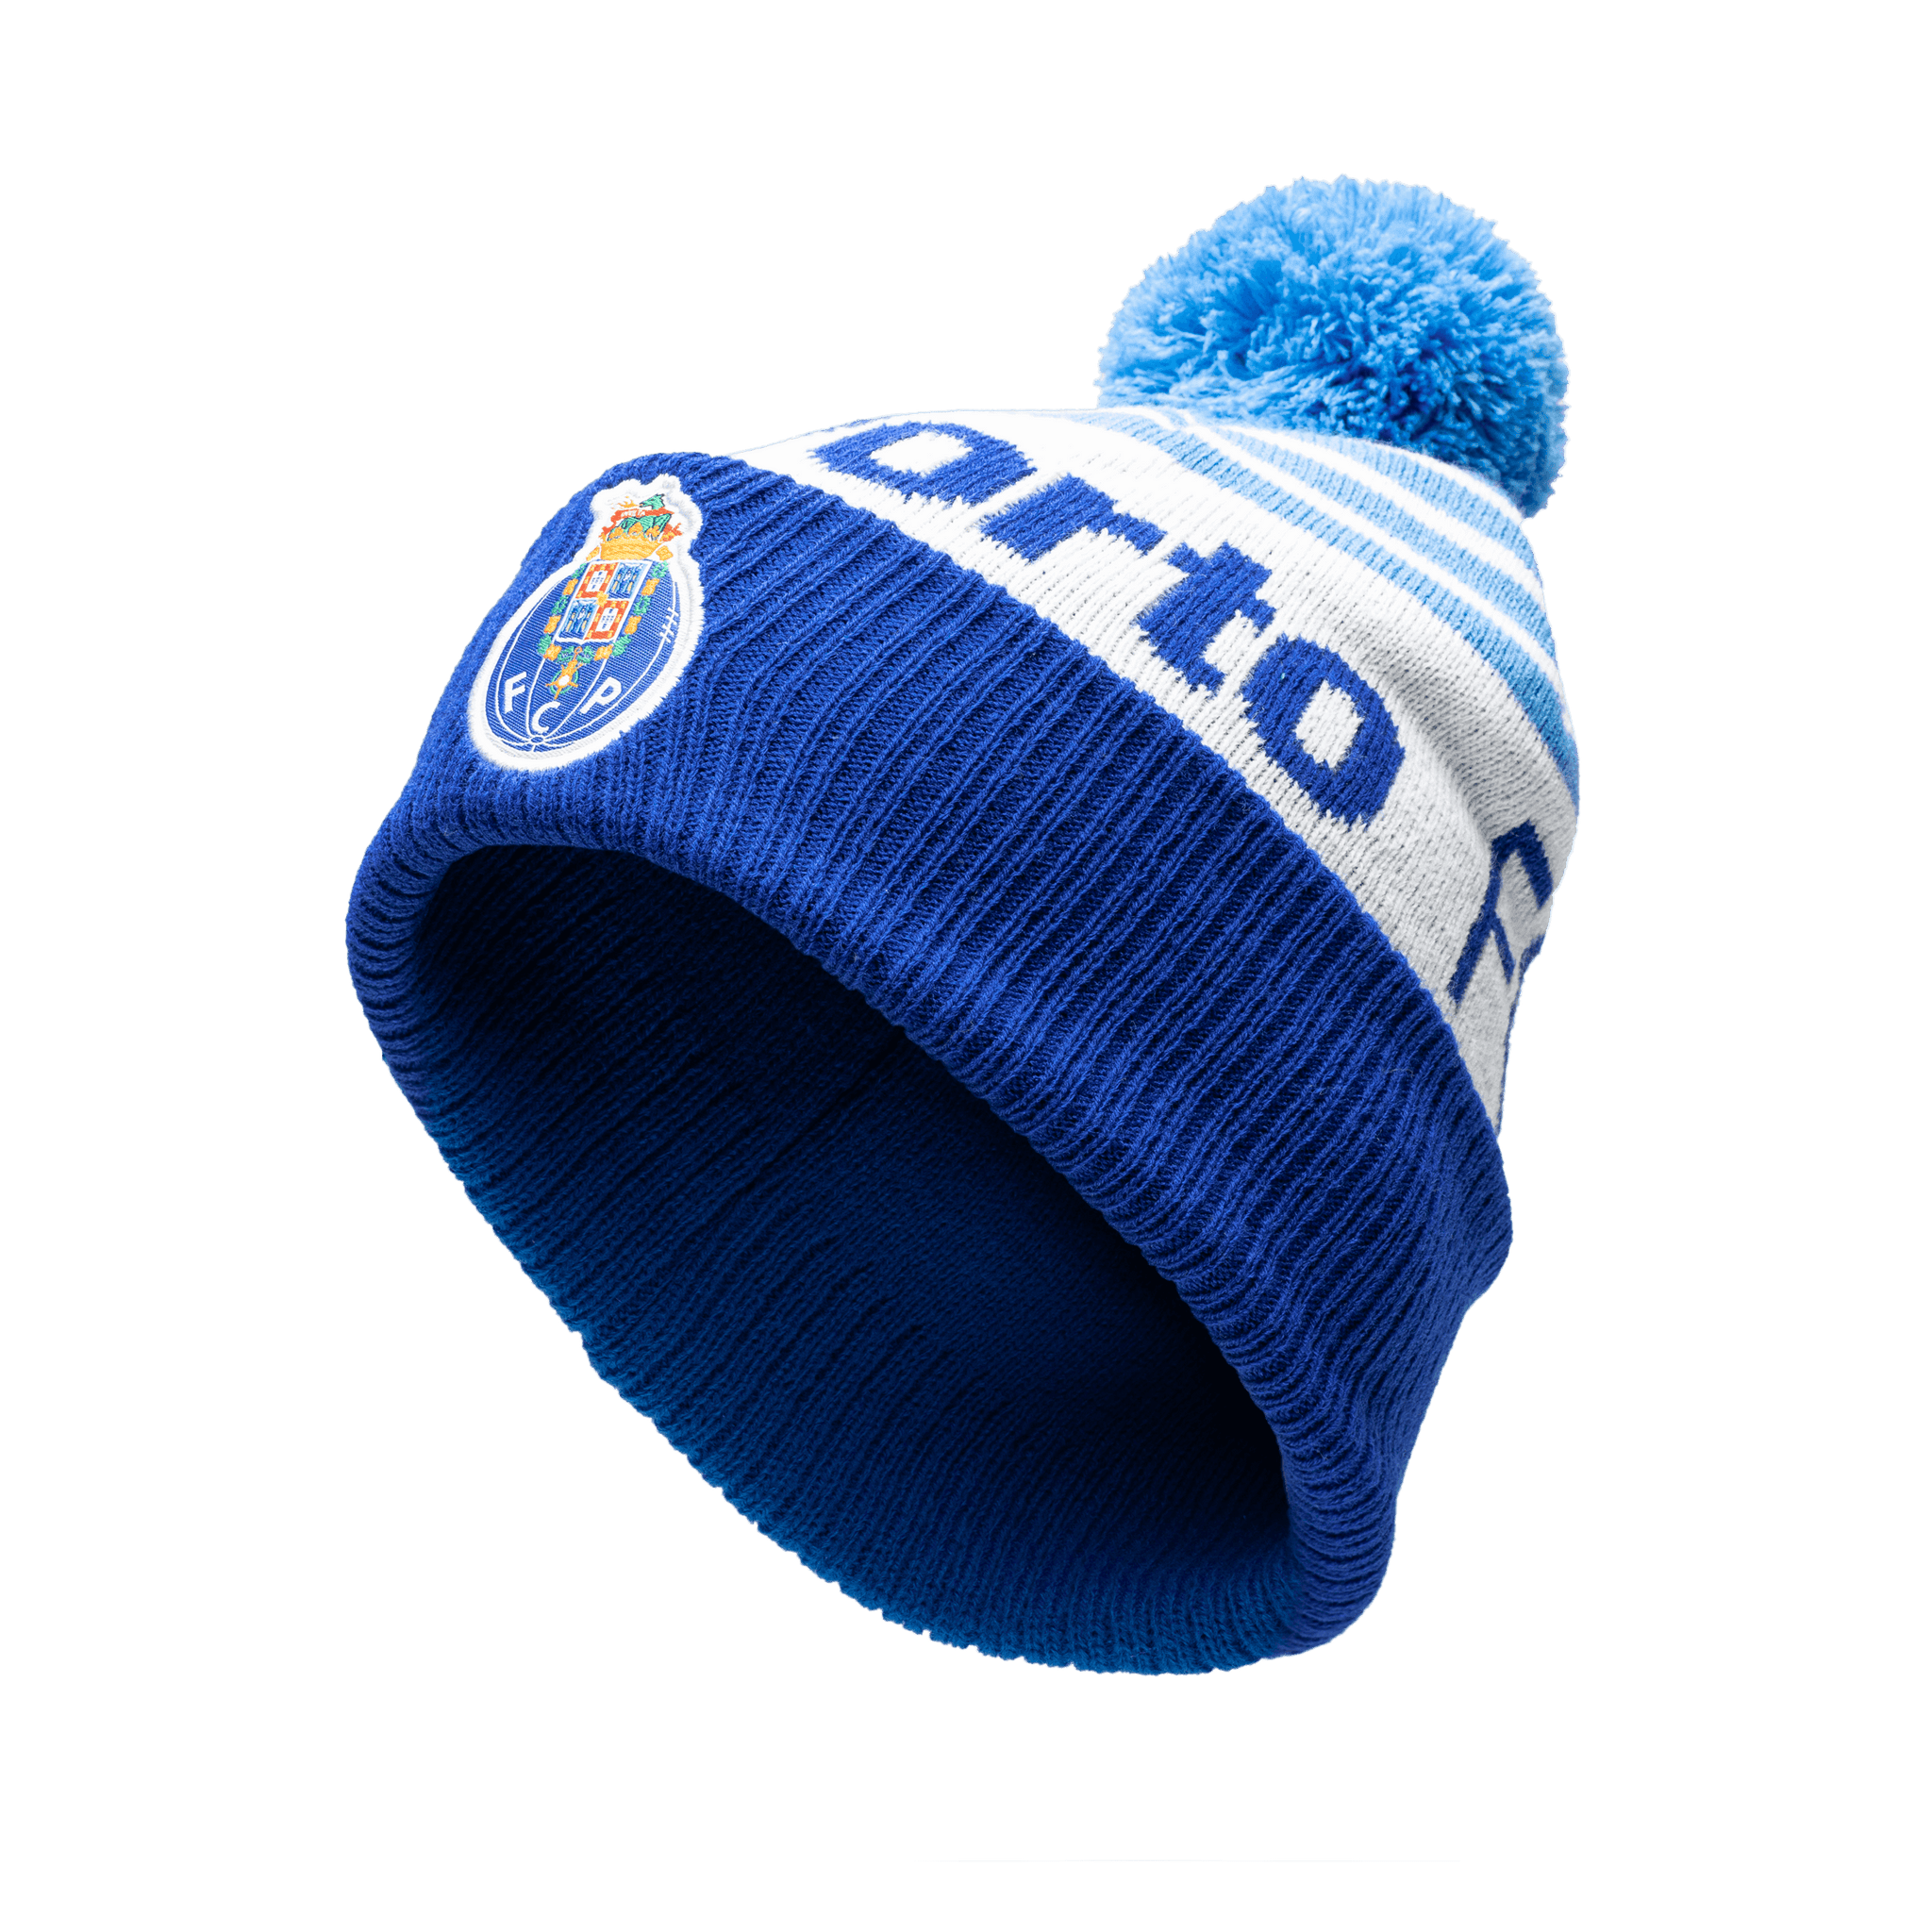 FC Porto Olympia Knit Beanie